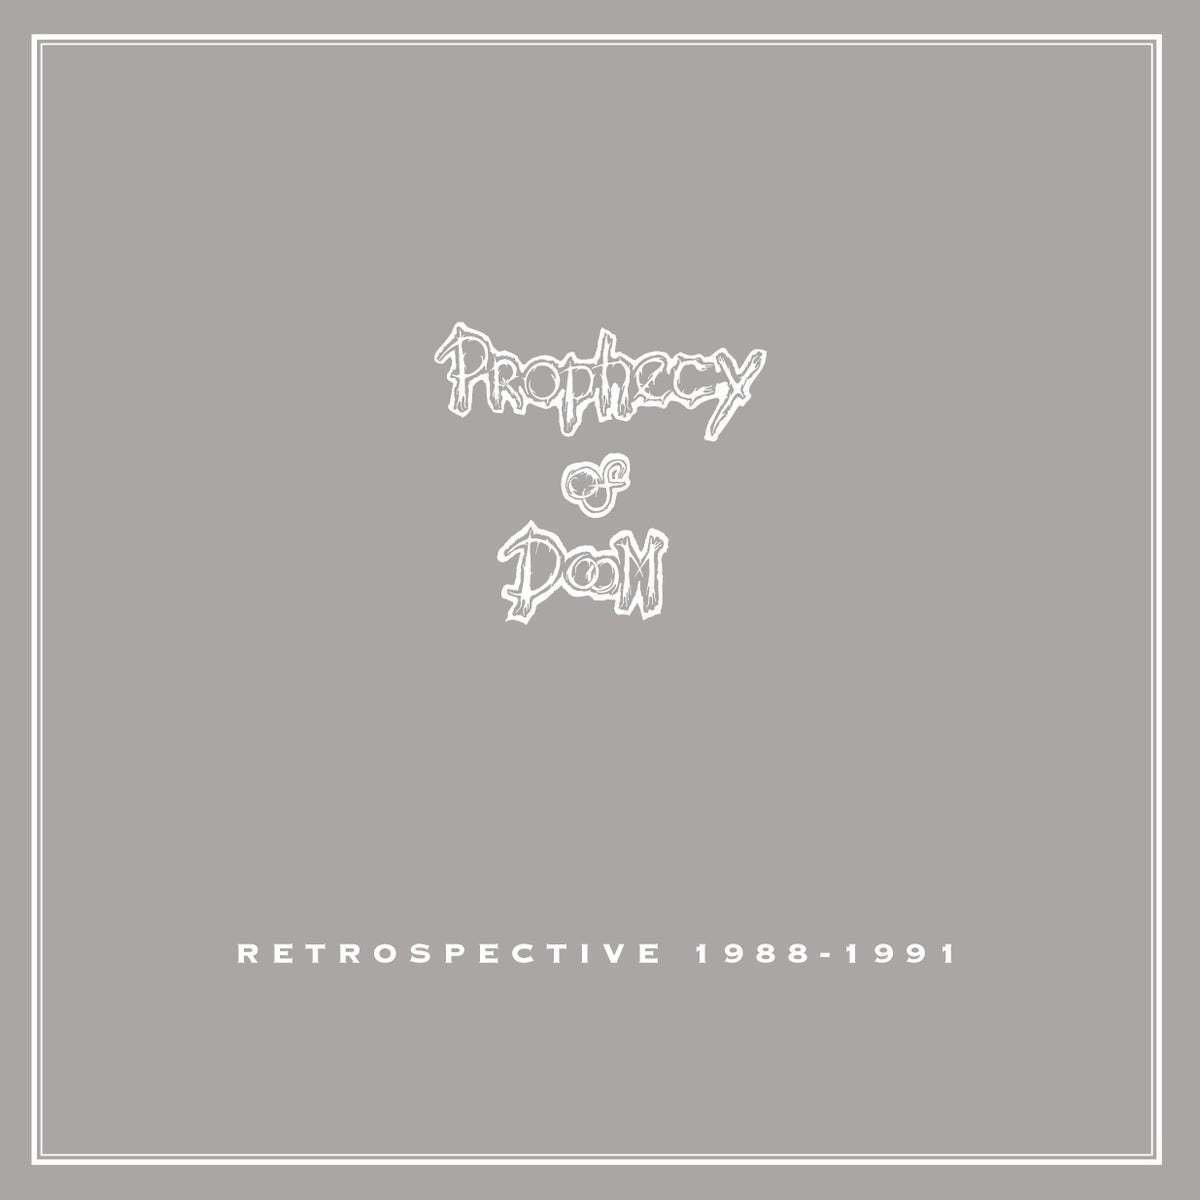 LP deska Prophecy Of Doom - Retrospective 1988-1991 (2 LP + CD)